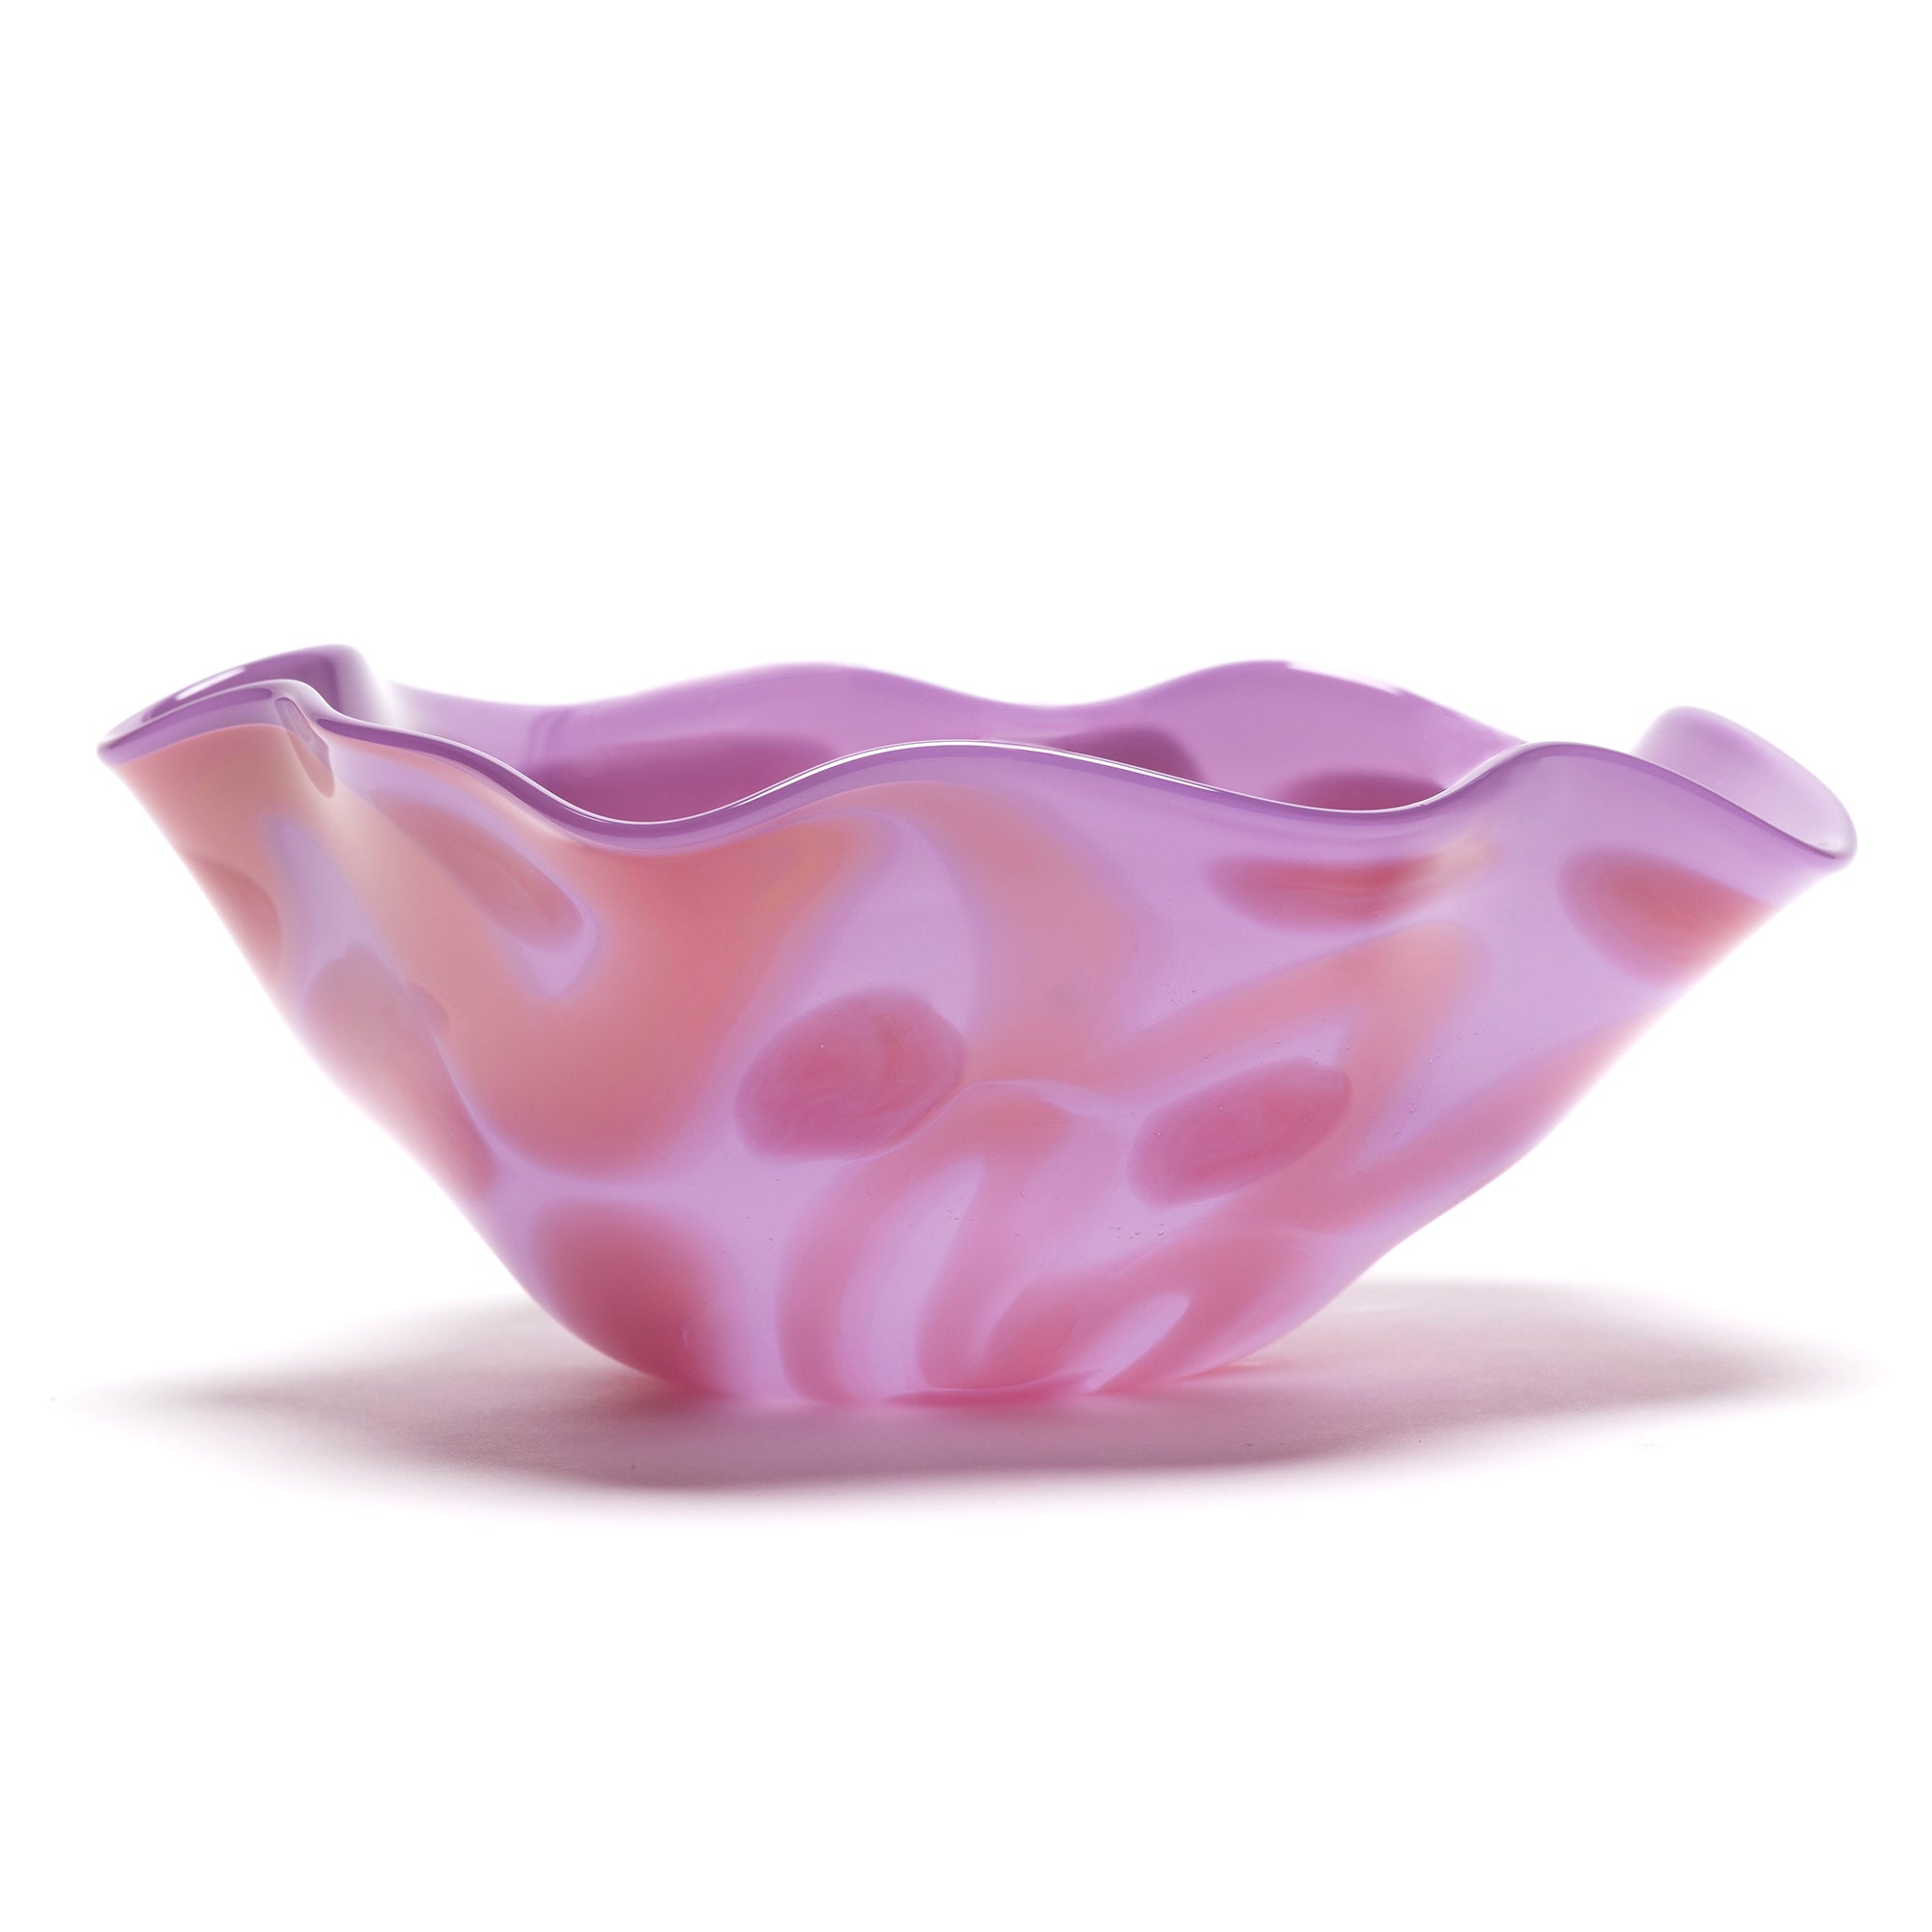 Surf Wave Purple Glass Decor Bowl